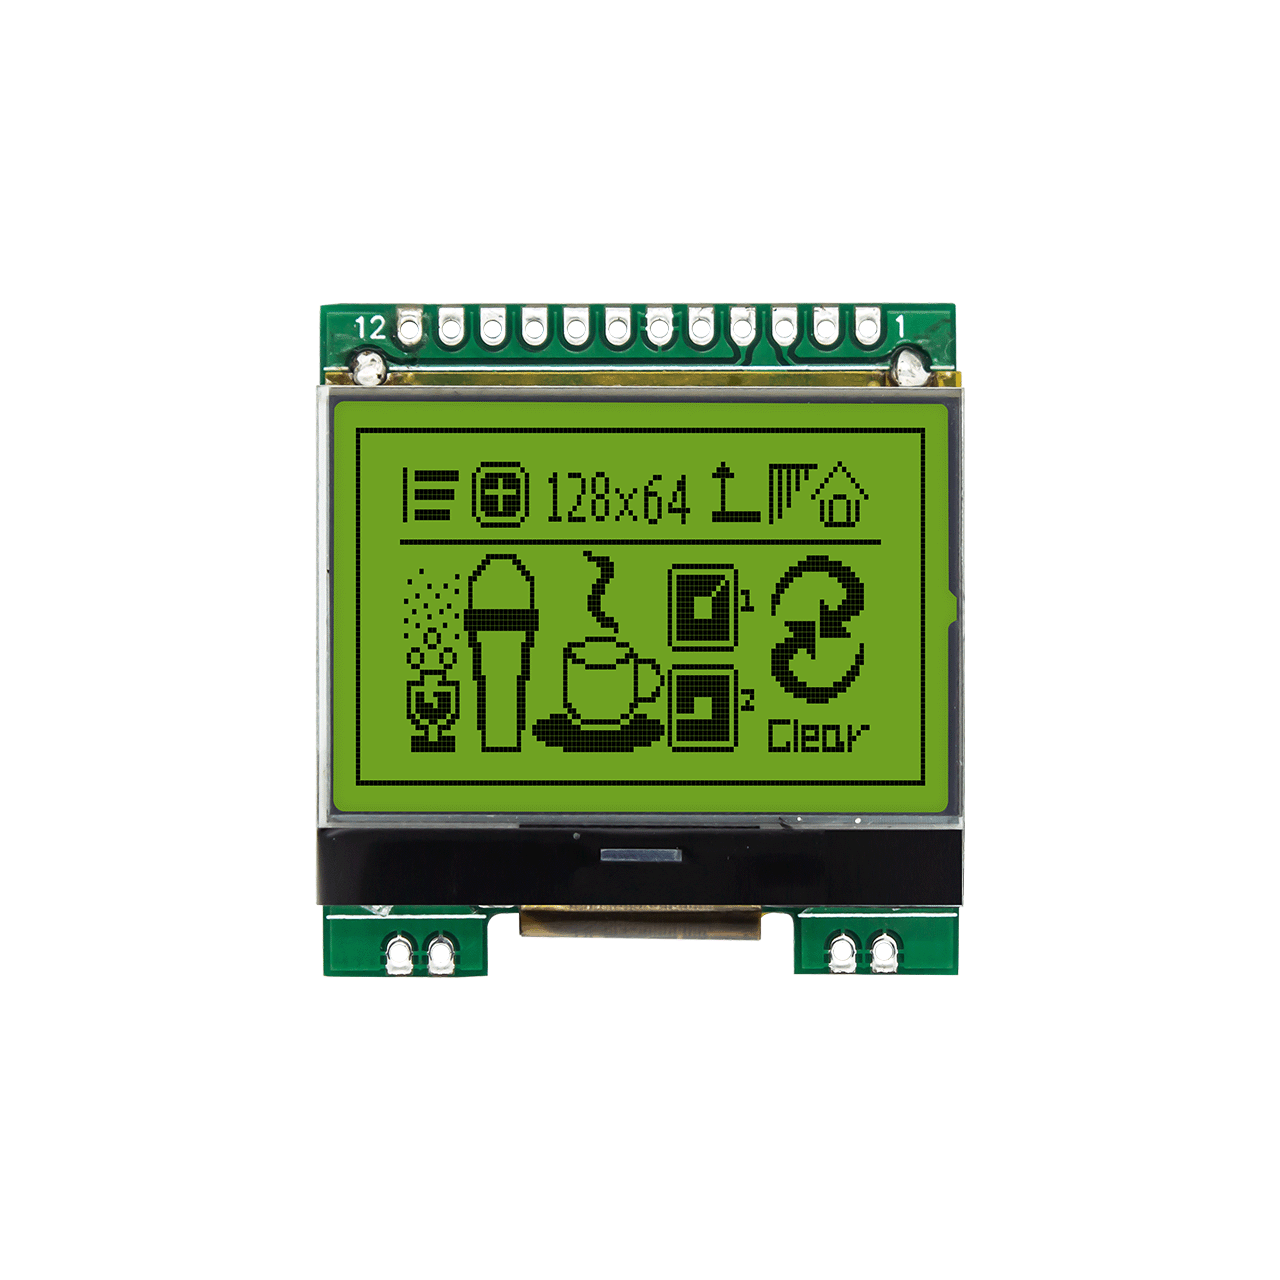 1.7寸128X64图形液晶模块 | STN正显 + 黄绿背光显示屏 | 超低温-40℃